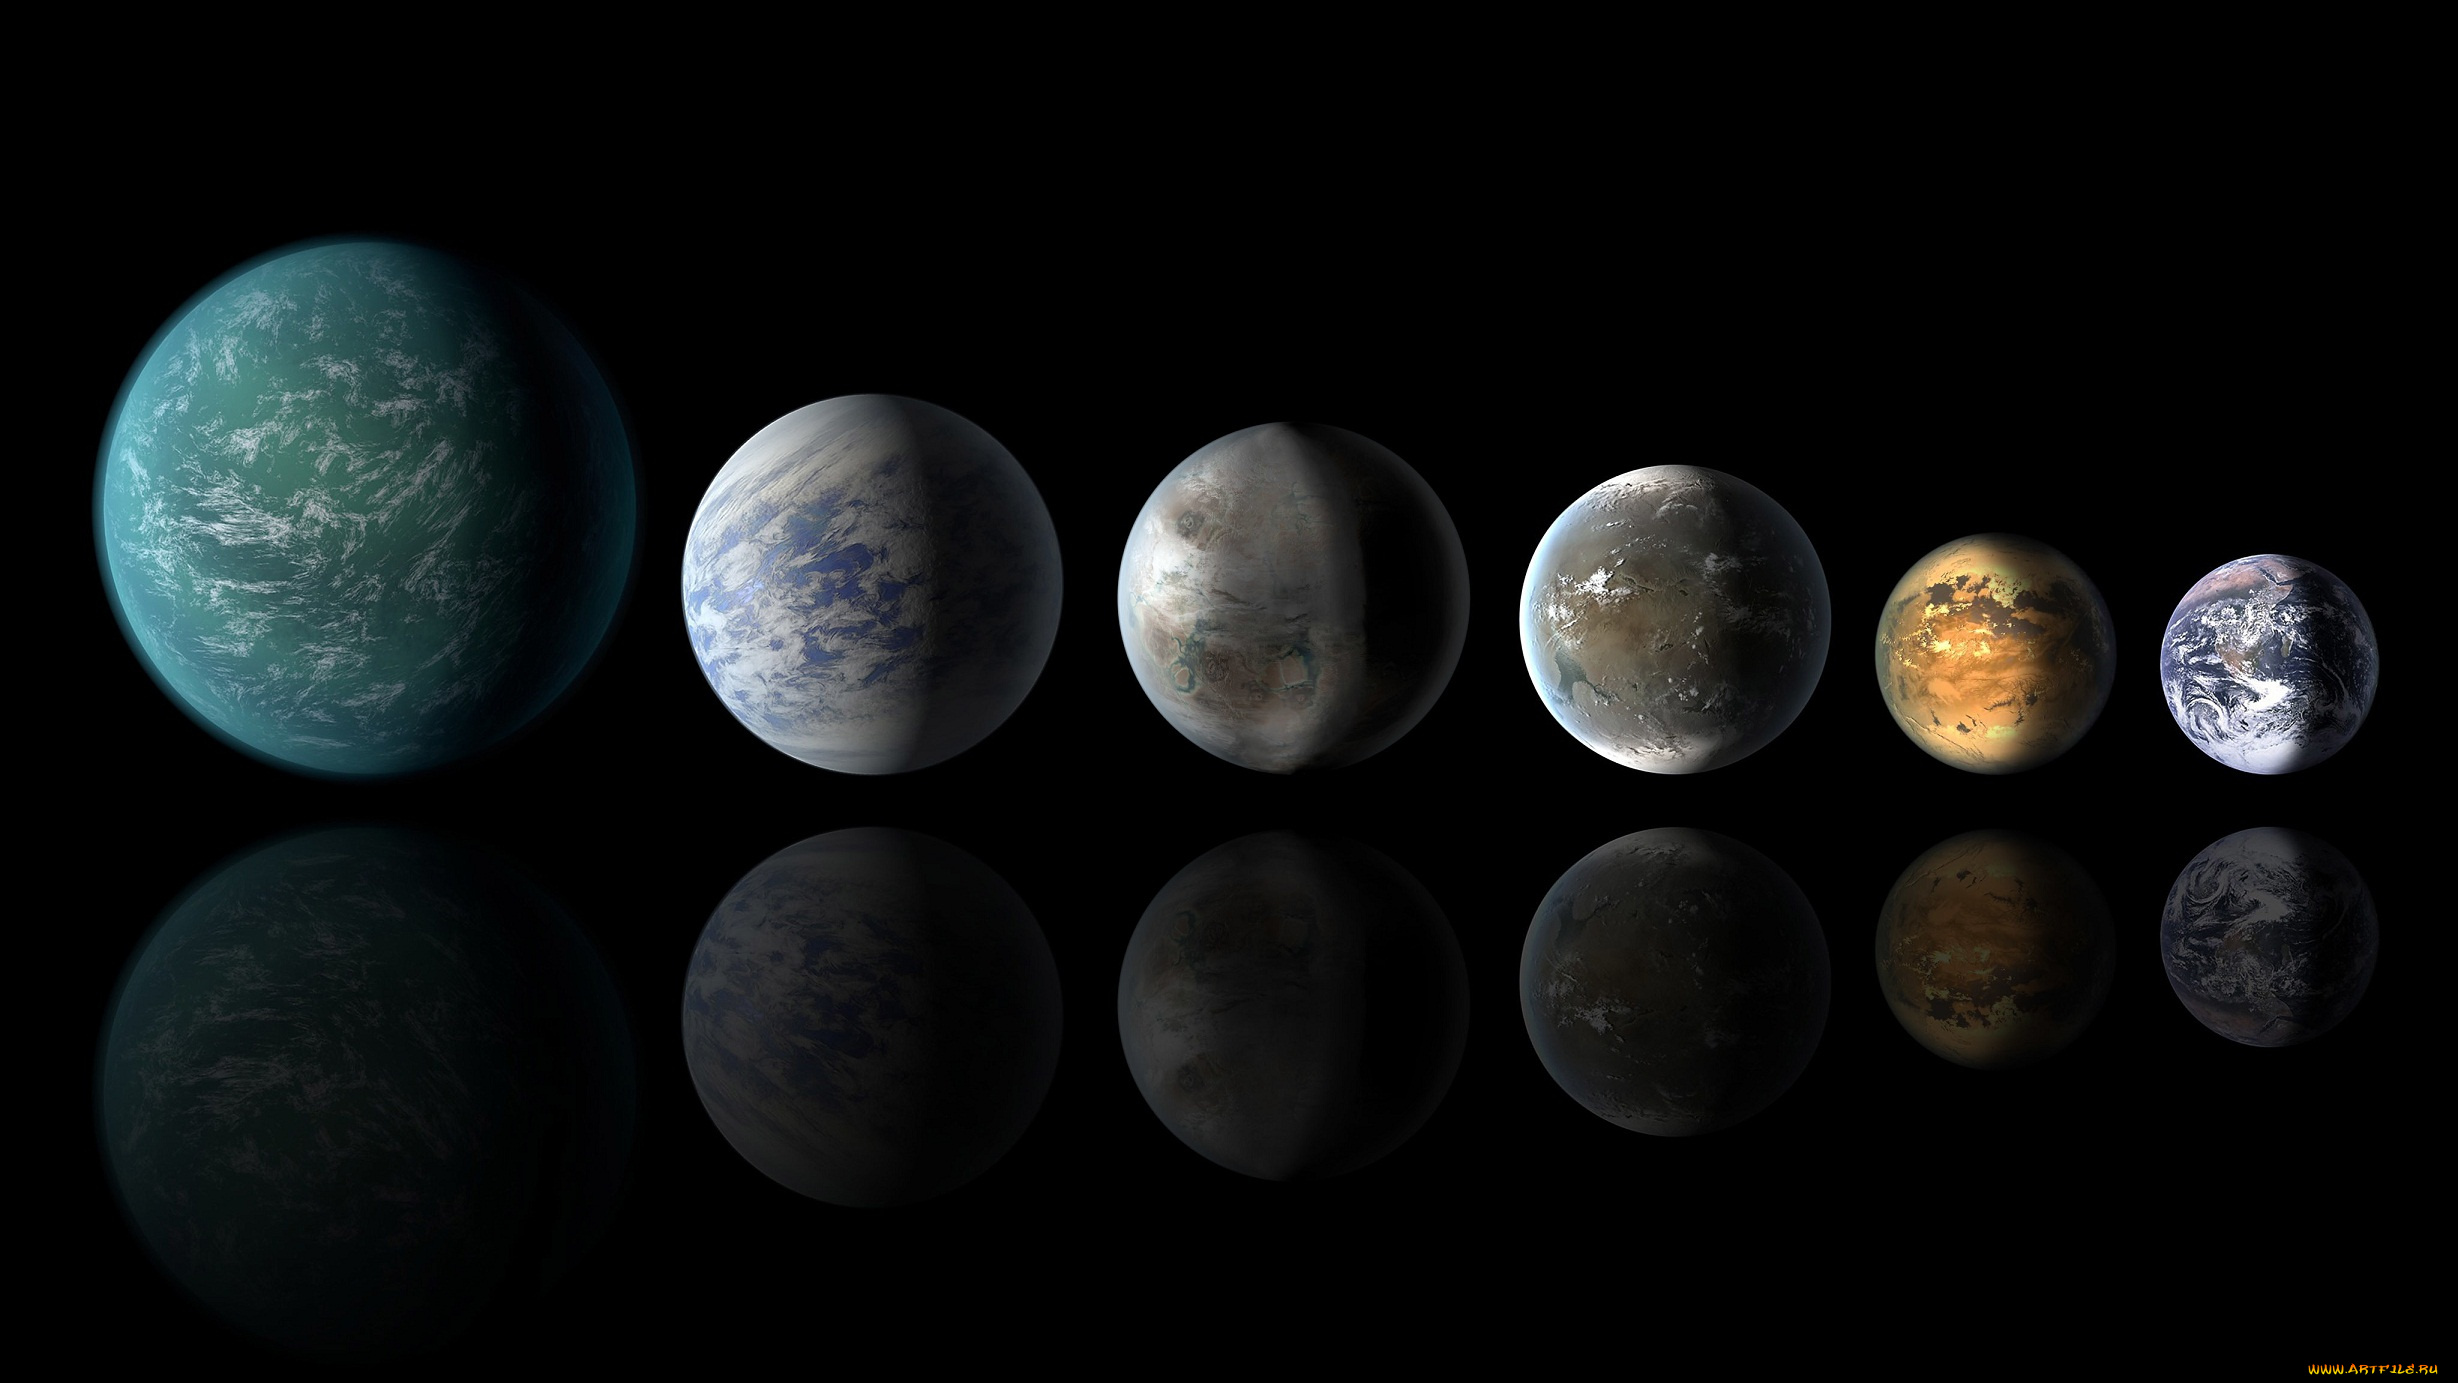 космос, арт, earth, nasa, kepler-22b, экзопланета, kepler-186f, kepler-62f, kepler-452b, kepler-69c, экзопланеты, земля, планета